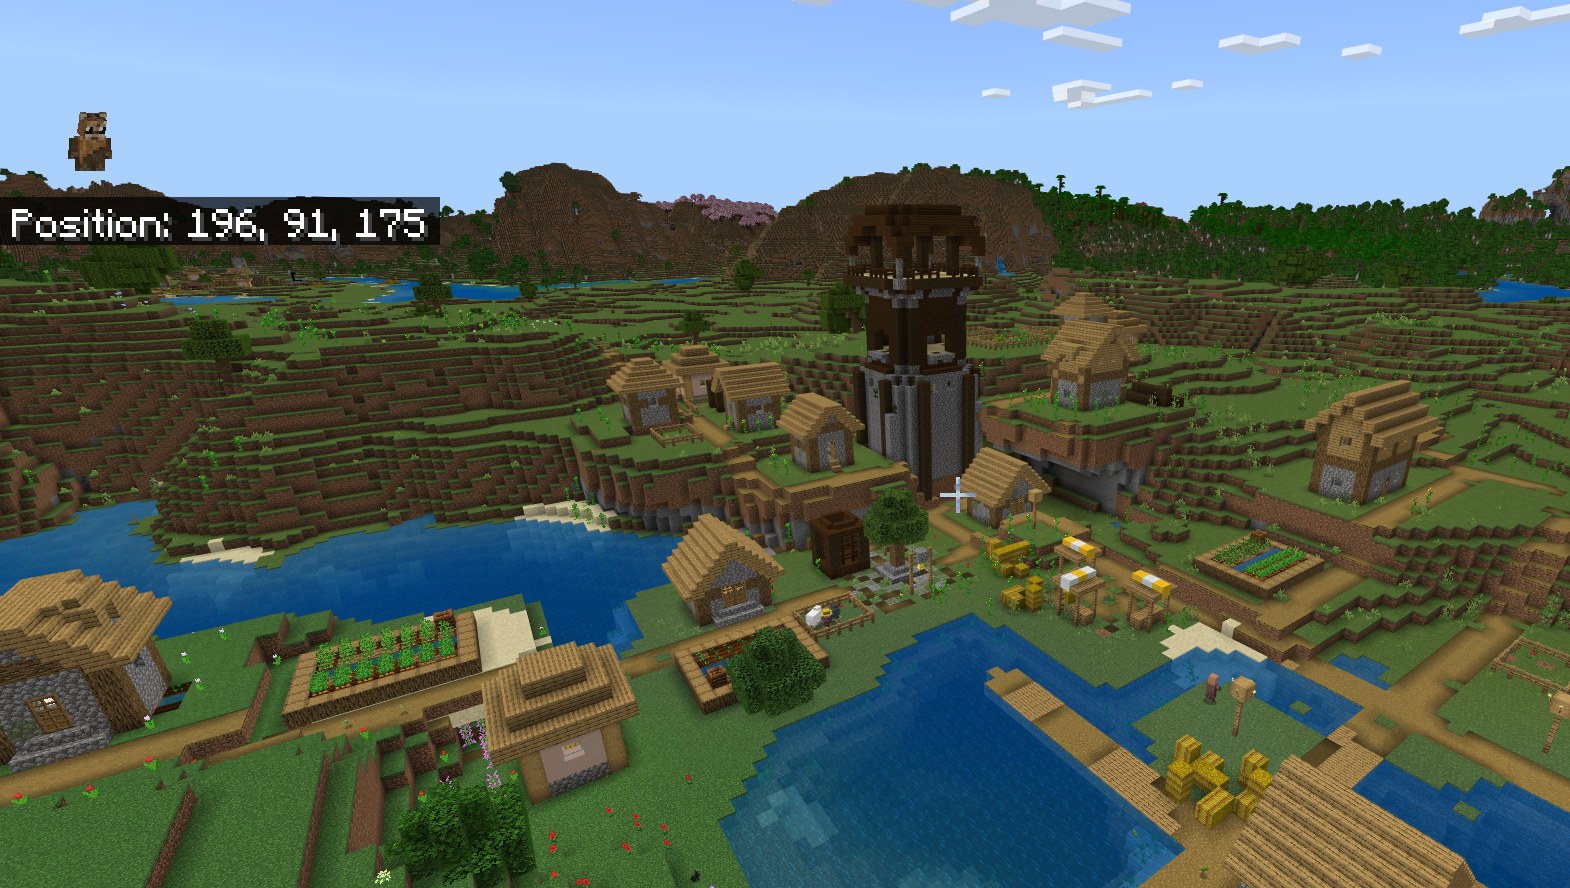 Vesnice Minecraft s základnou Pillager sedí uprostřed ní